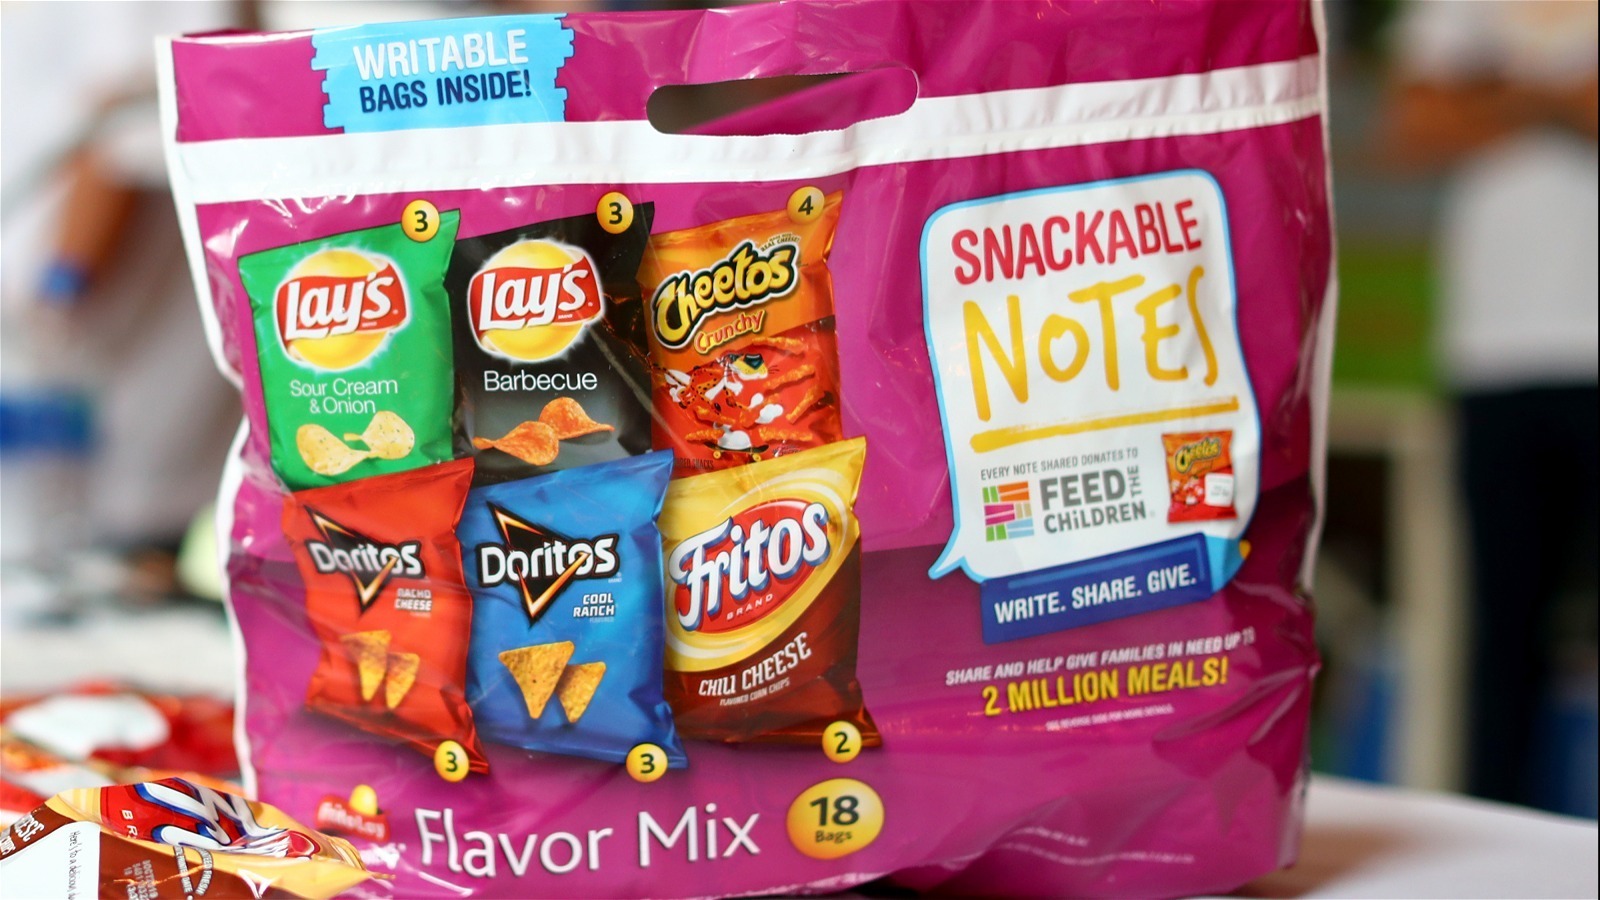 Frito Lay Doritos & Cheetos Mix Variety Pack Chips - Shop Chips at H-E-B